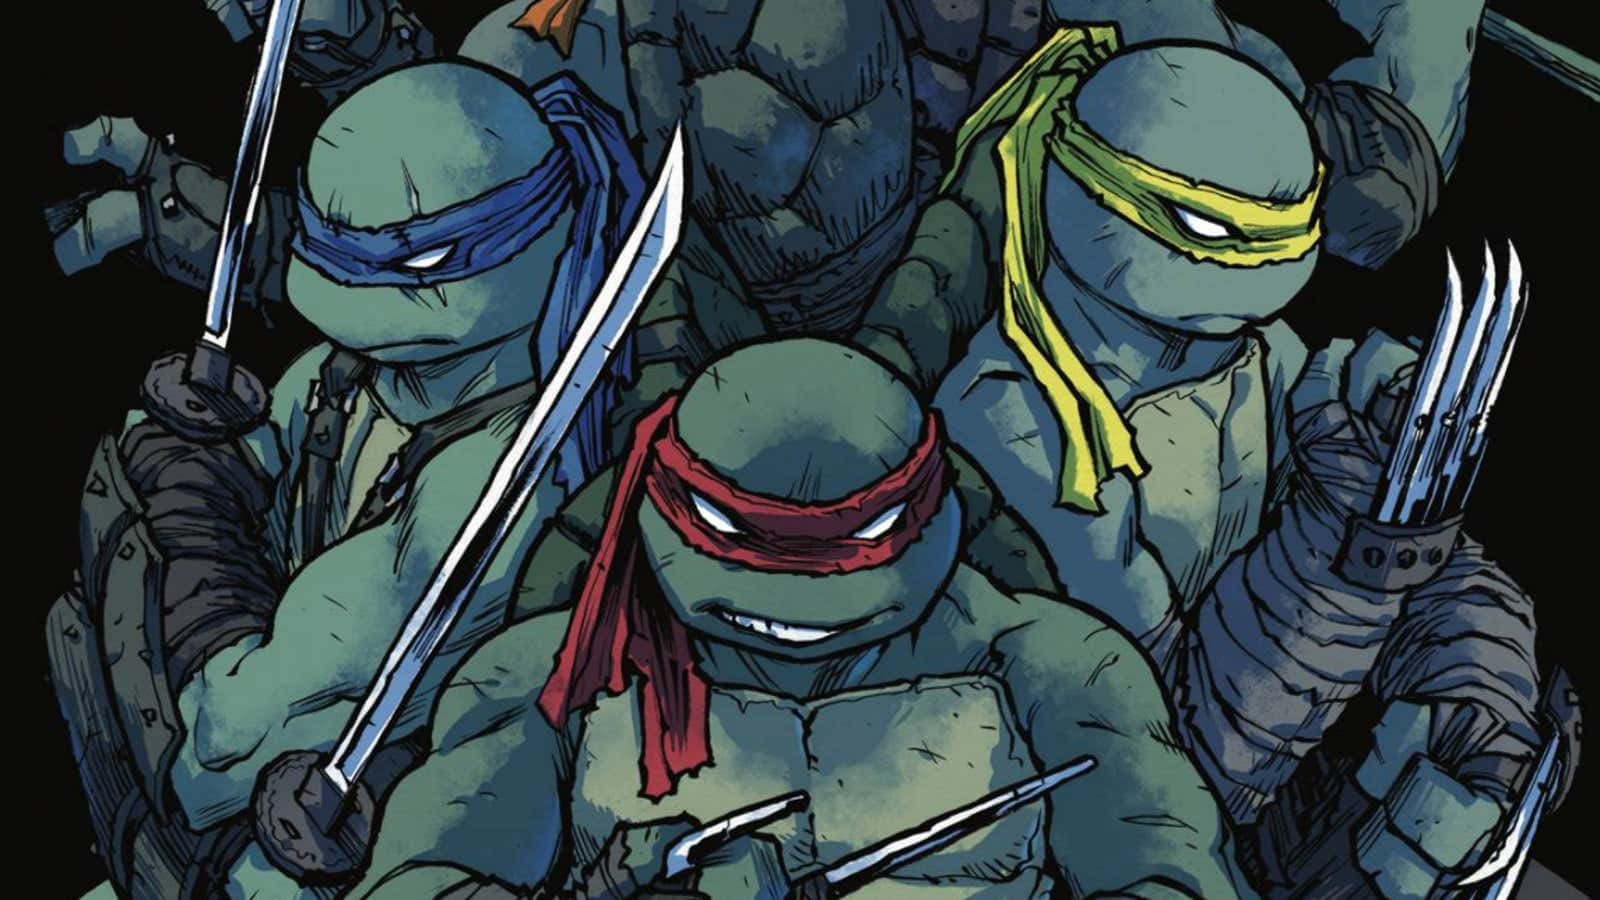 The Teenage Mutant Ninja Turtles